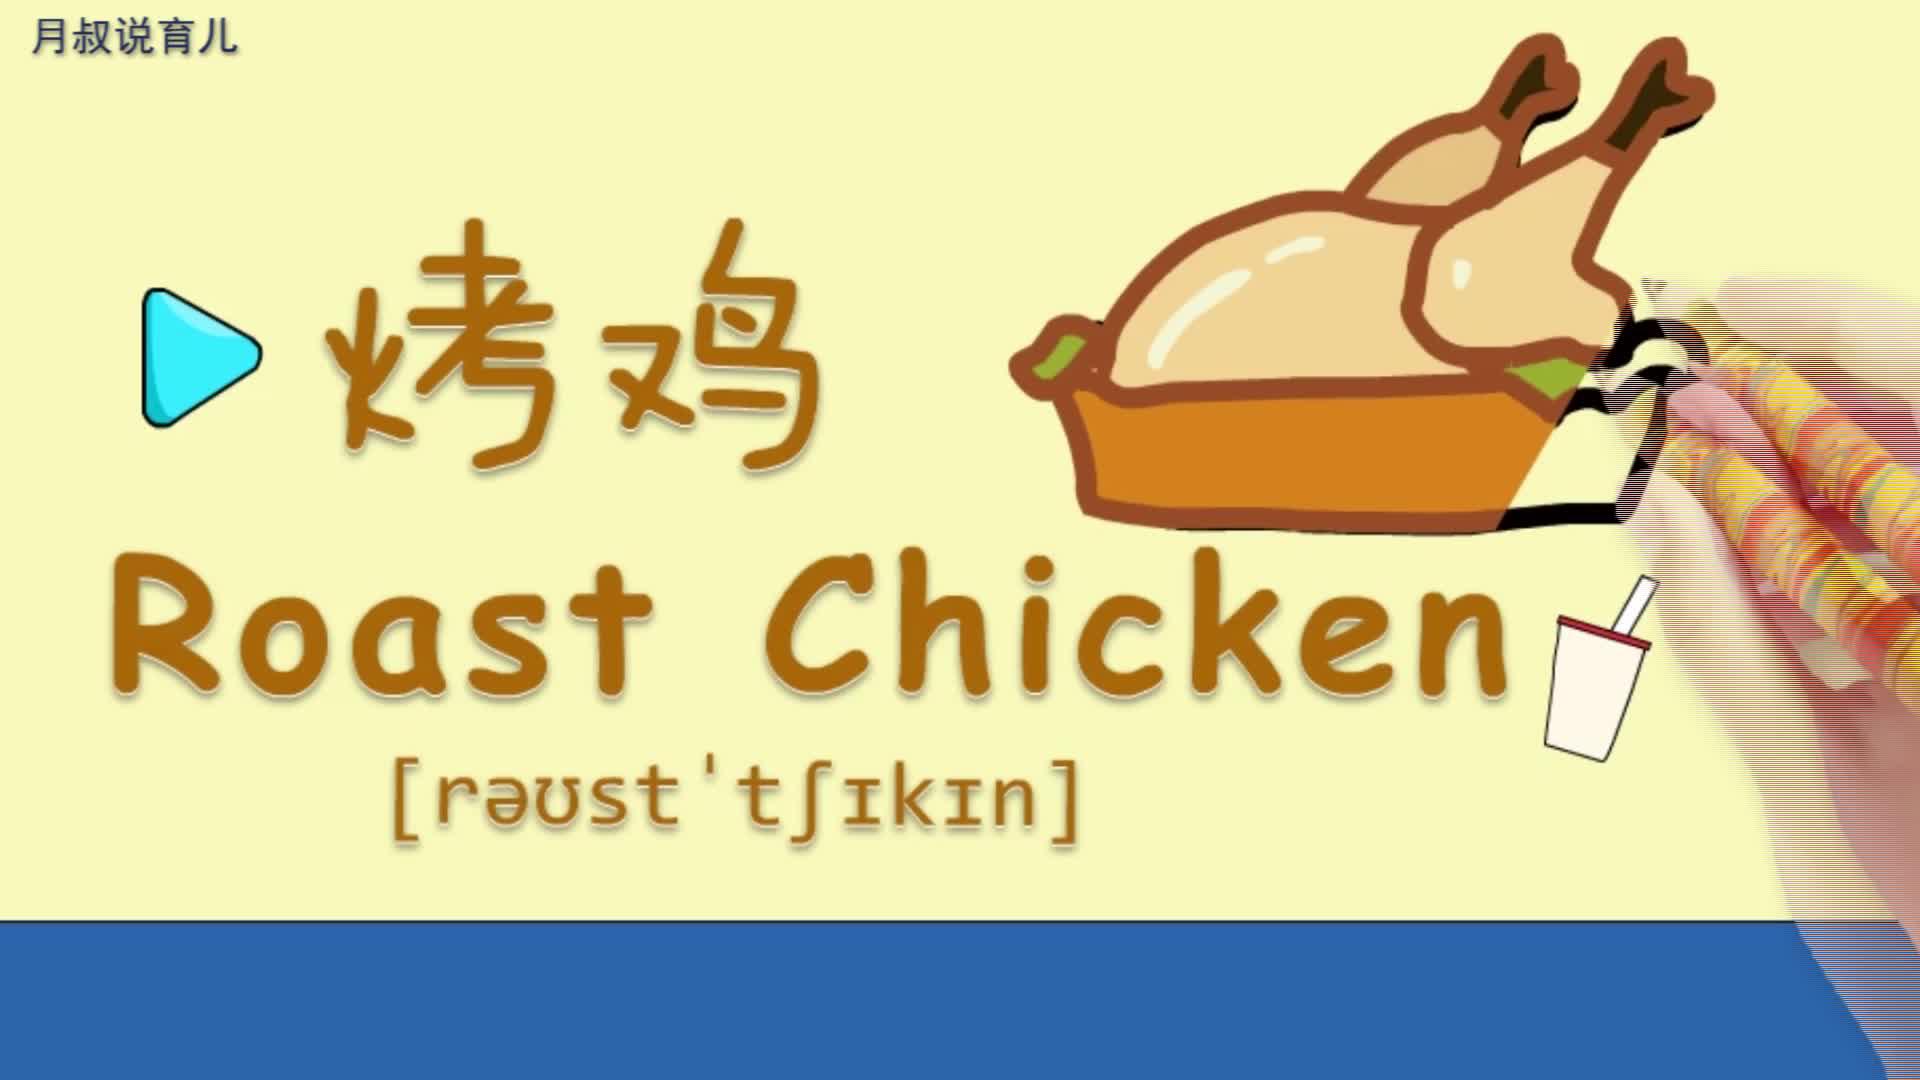 亲子绘画英语32:我最喜欢吃烤鸡了,小朋友你喜欢吗